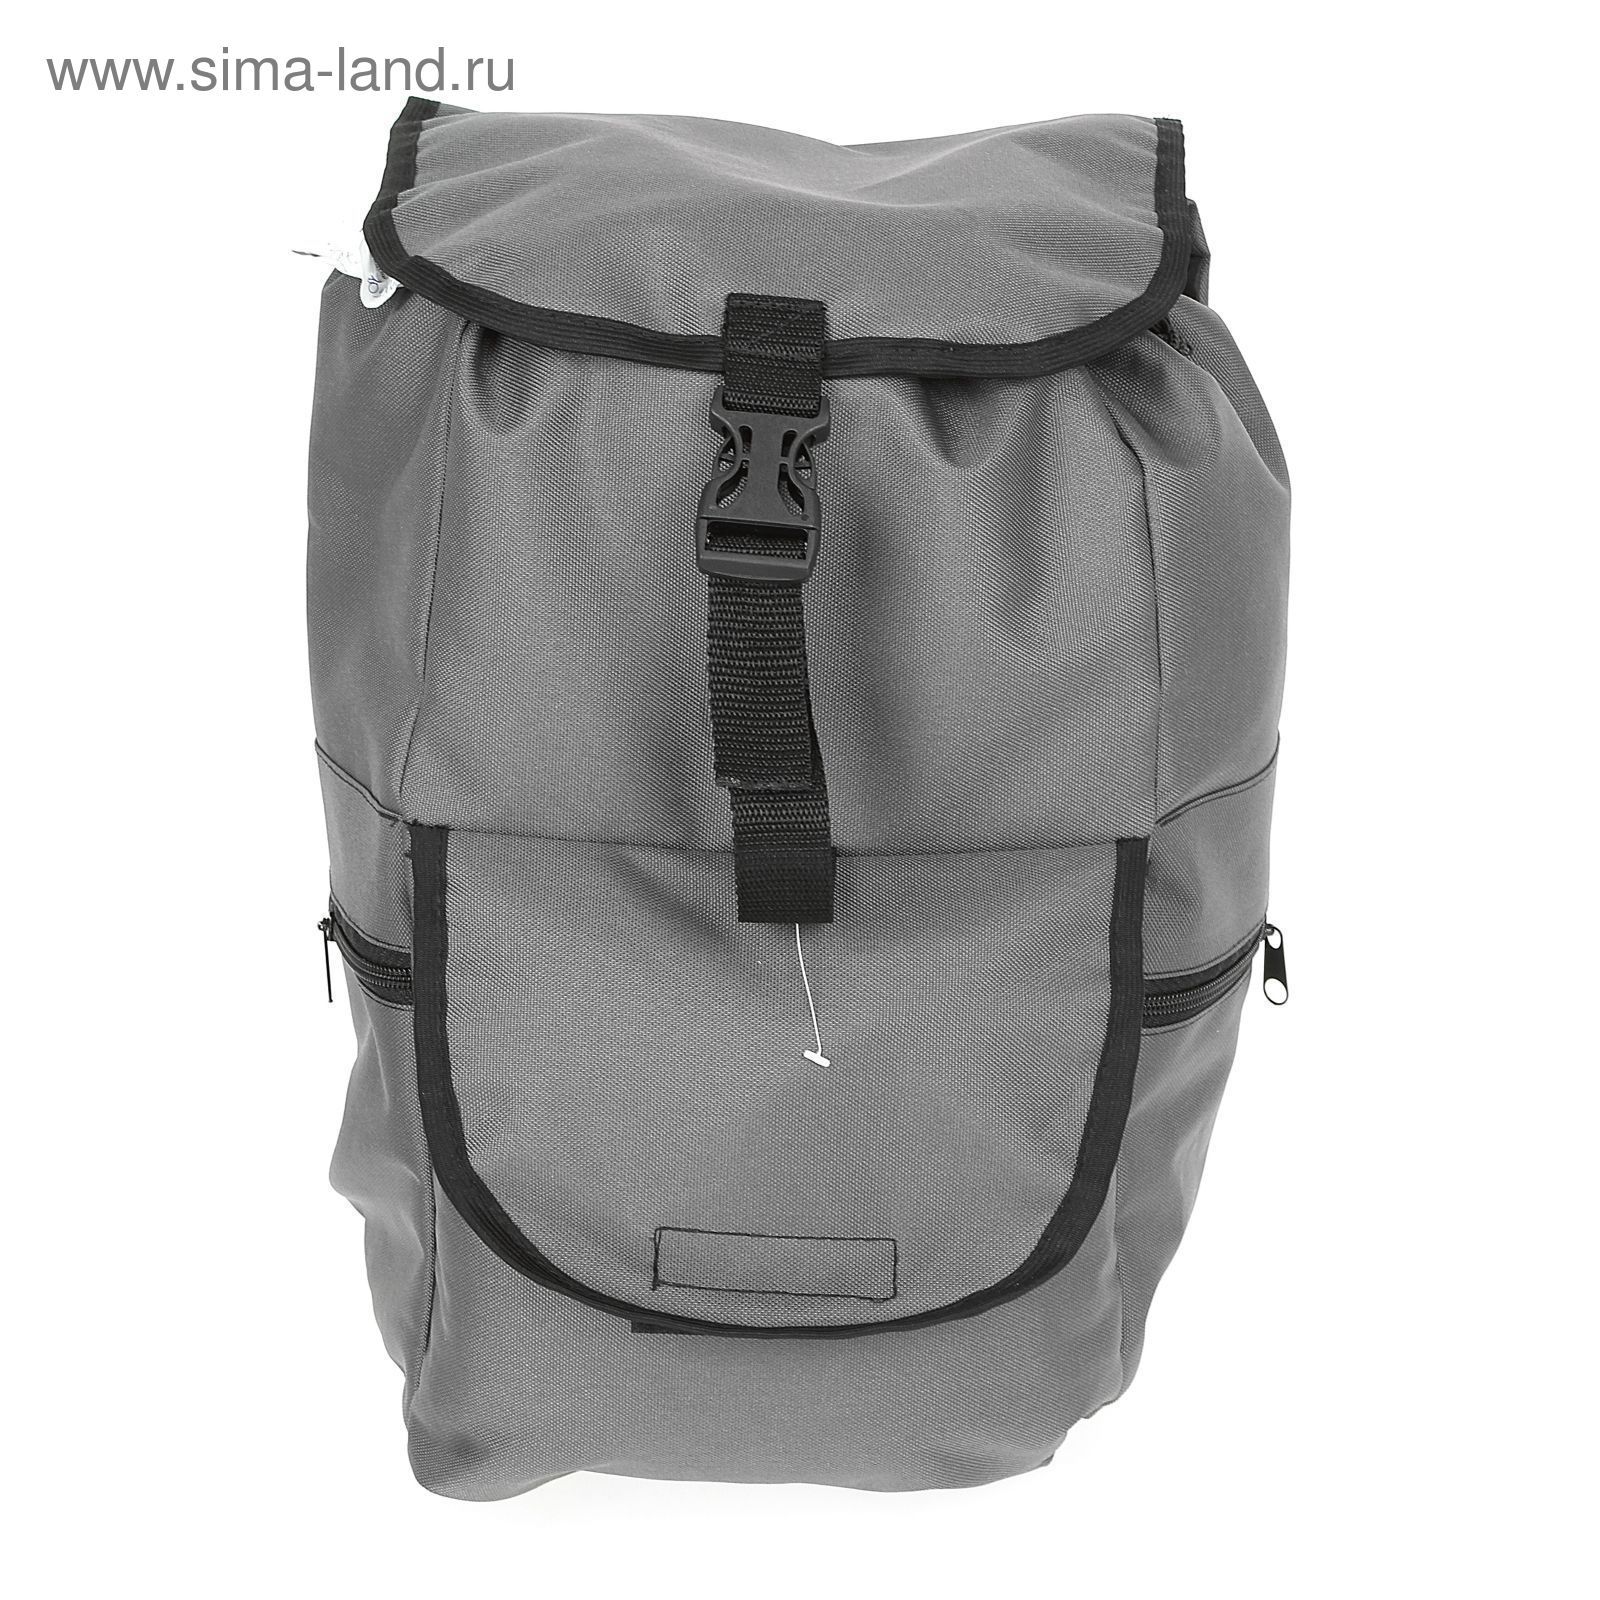 Рюкзак Тип-18, 30 л, цвета МИКС